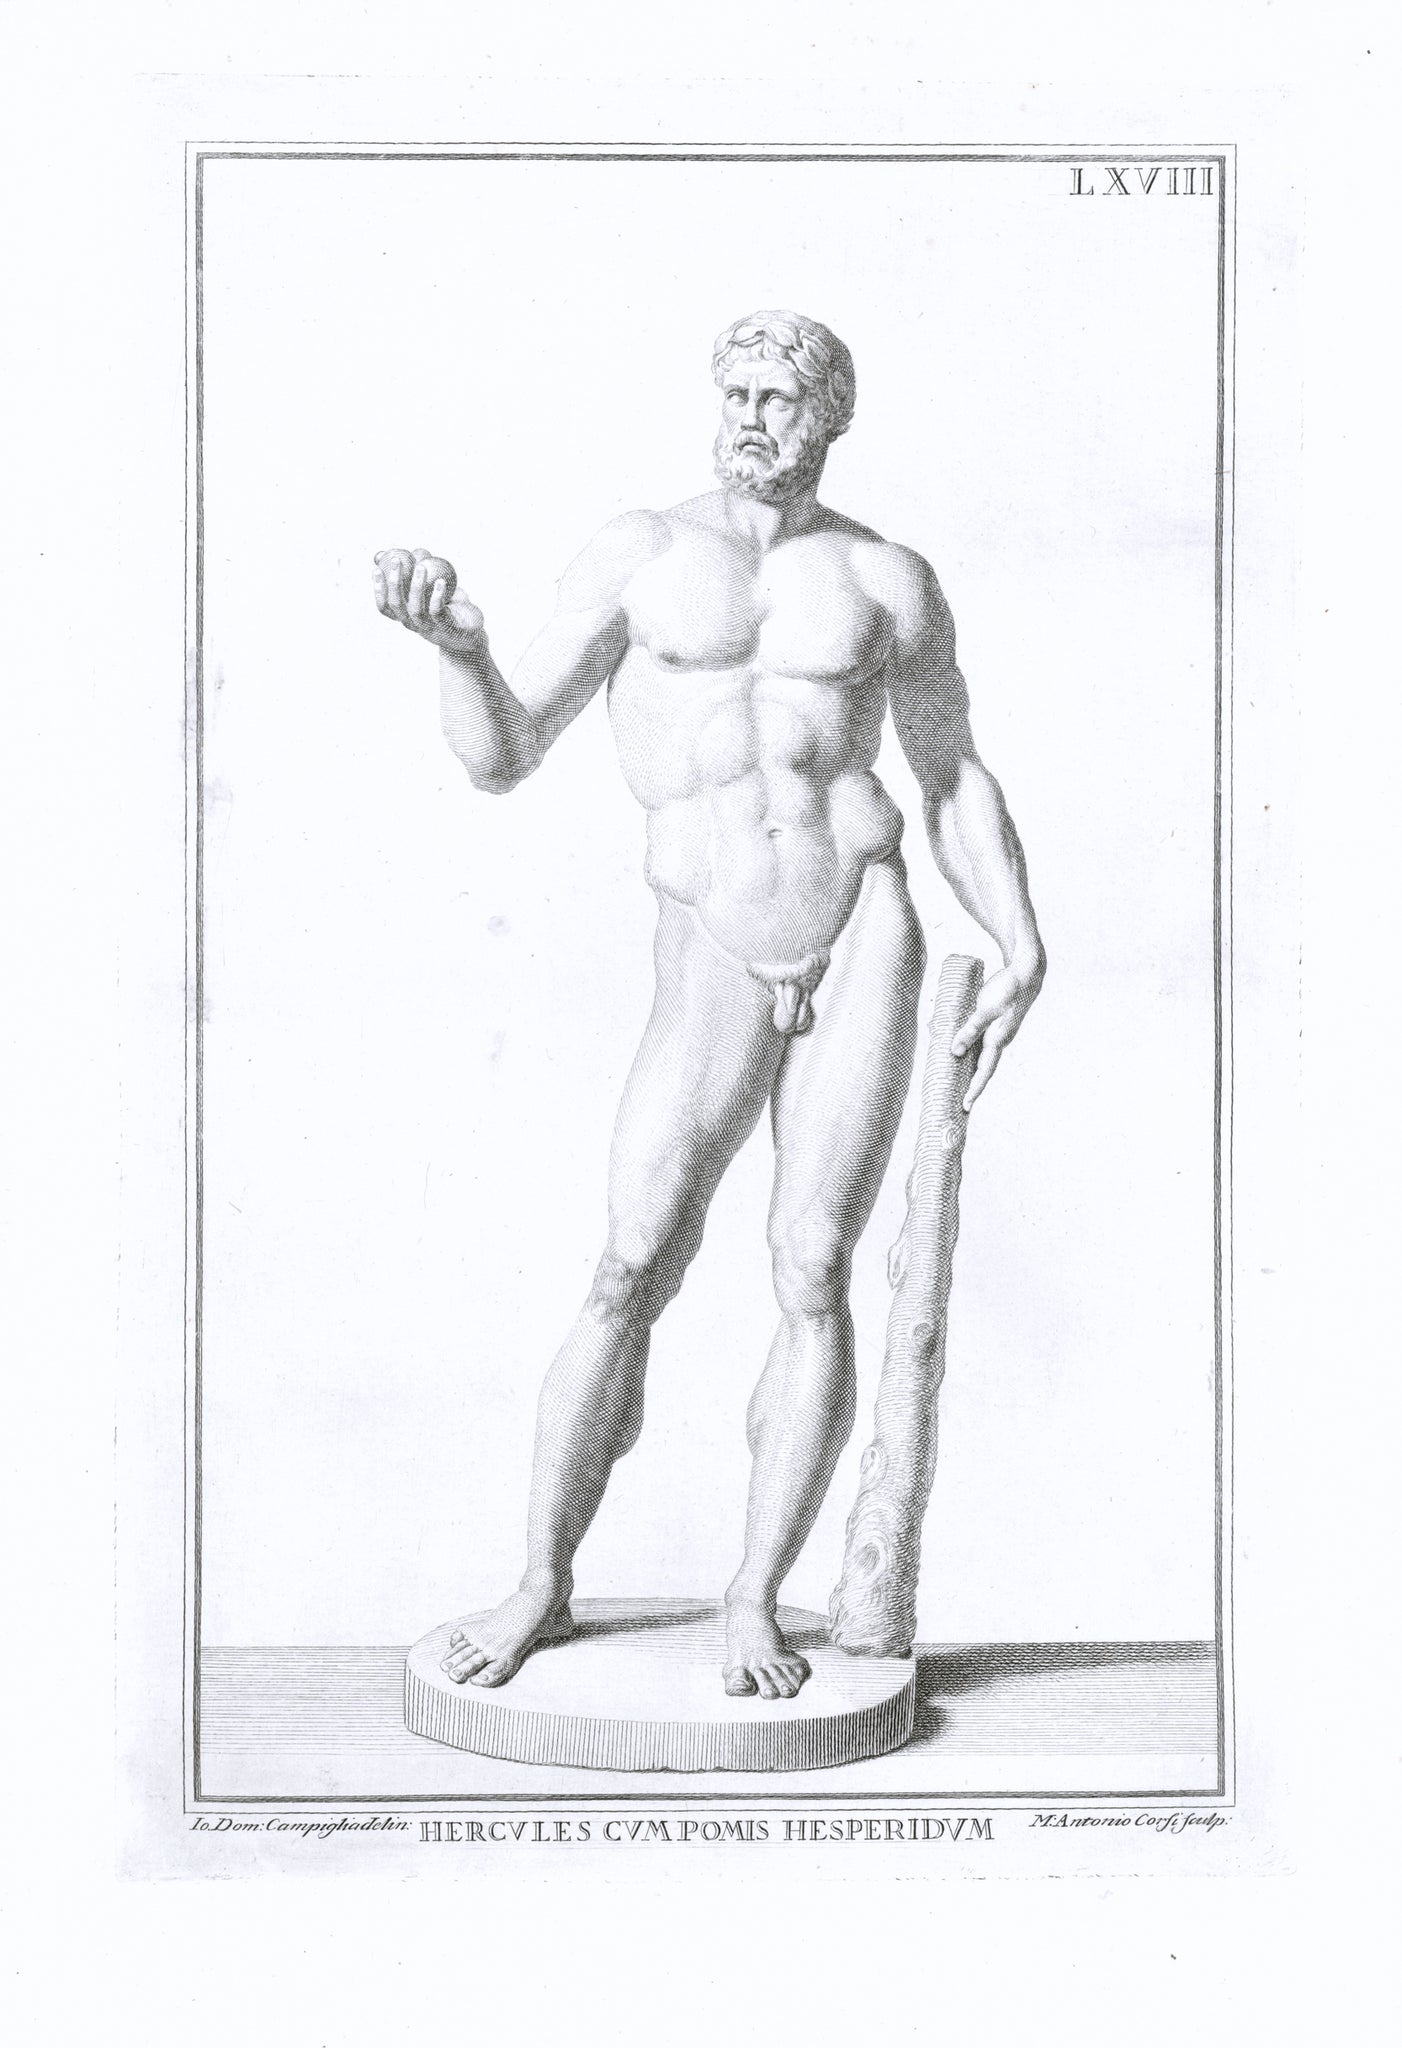 Statues, Ancient World, Hercules, Hesperides, Giovanni Domenico Campiglia